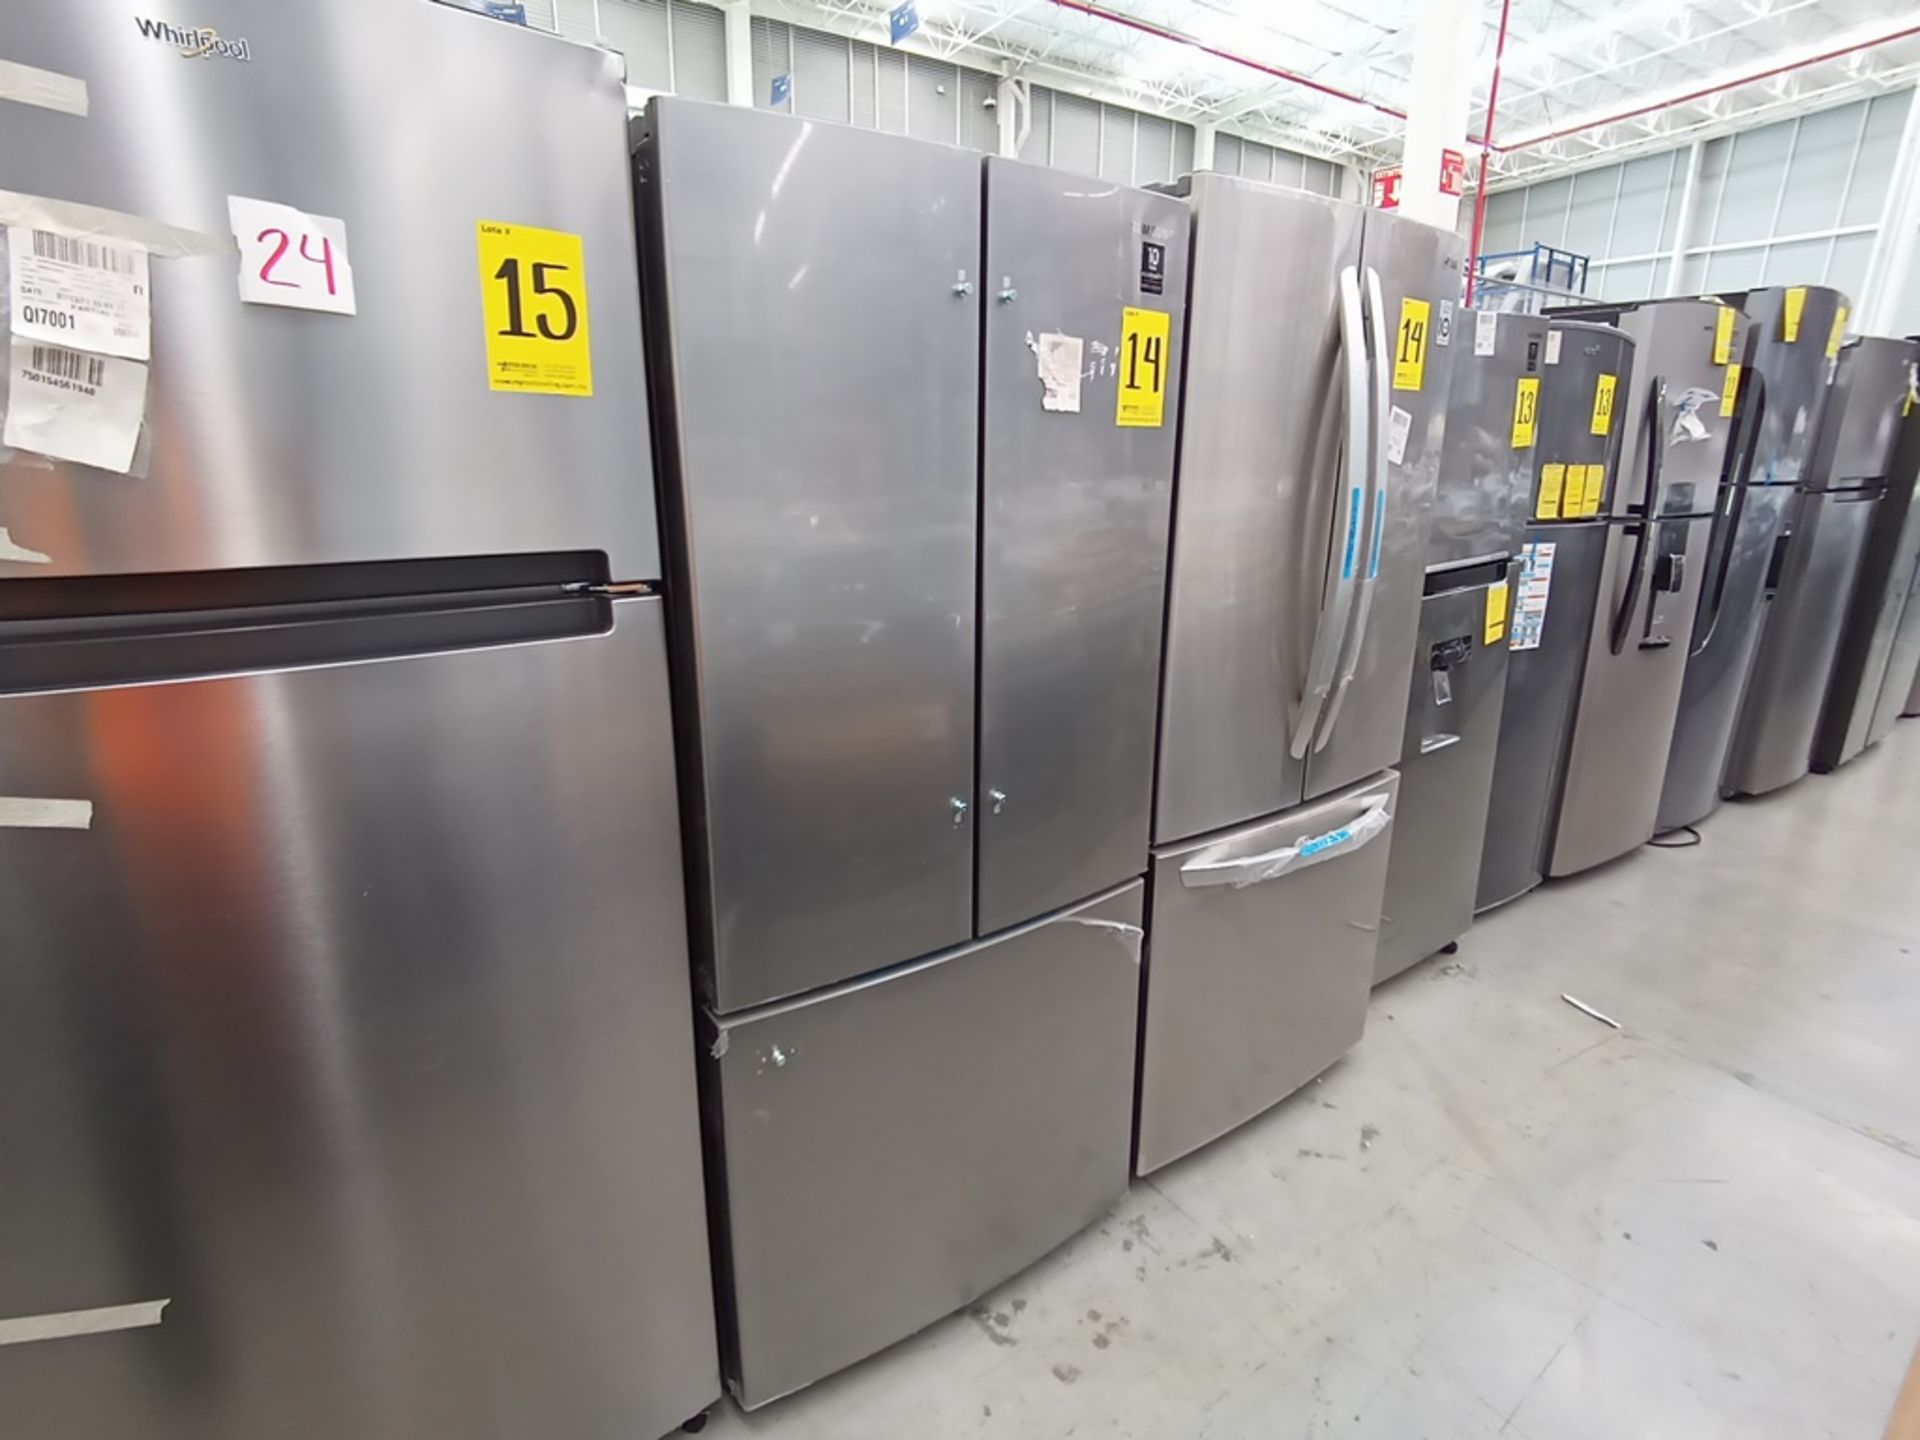 Lote de 2 refrigeradores contiene: 1 Refrigerador Marca LG, Modelo GF22BGSK, Serie 107MRMD4S595, Co